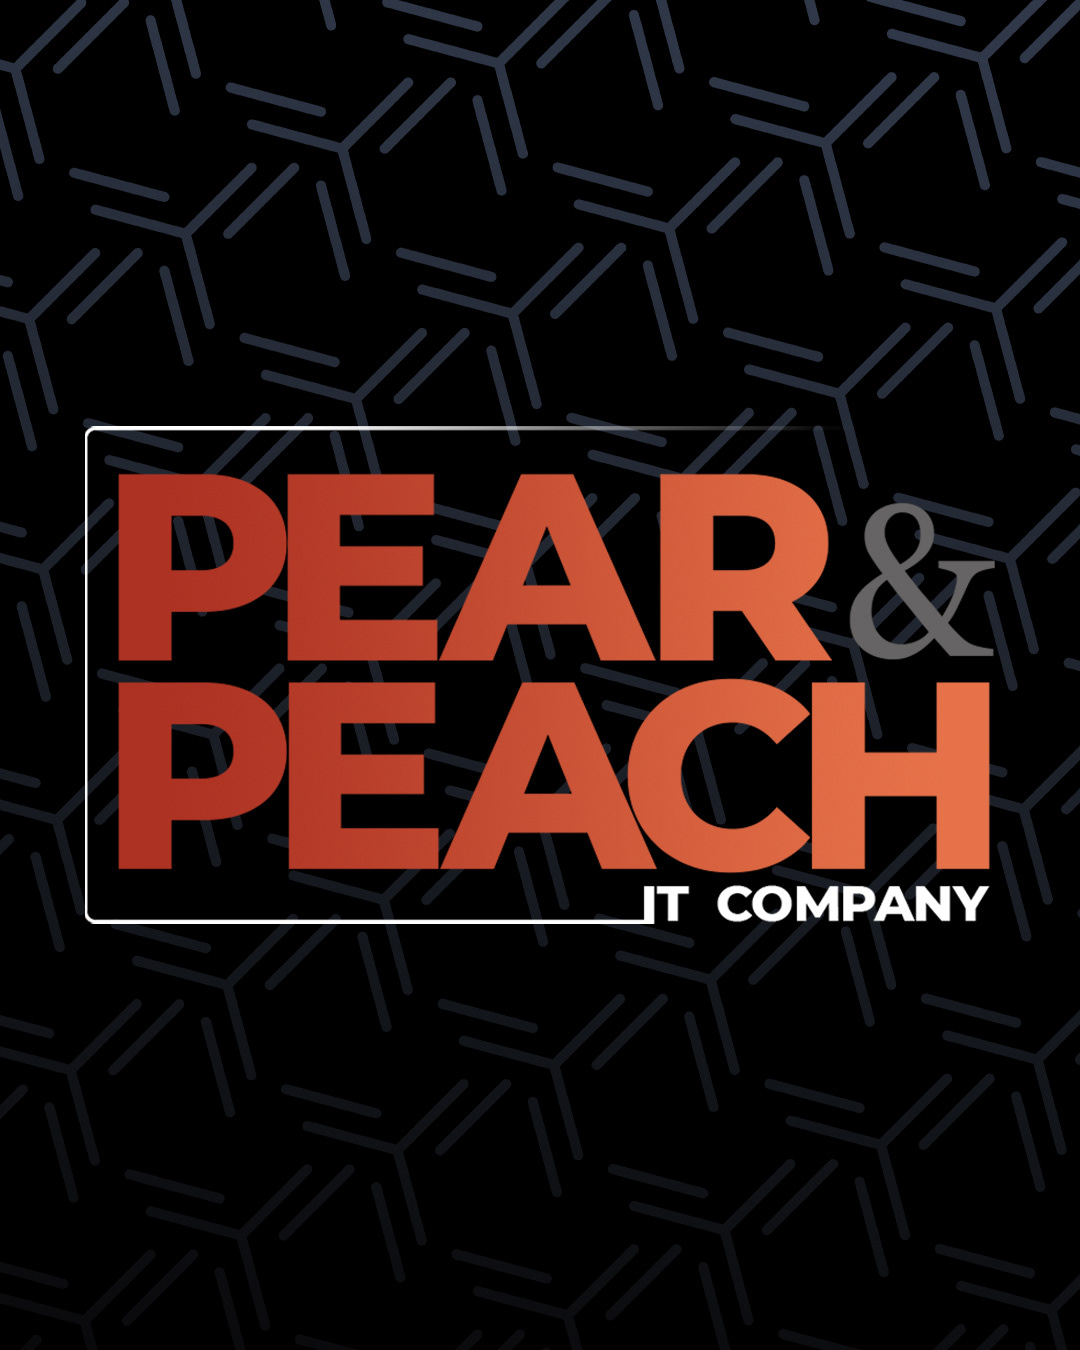 company feedbackplus IT pear&peach